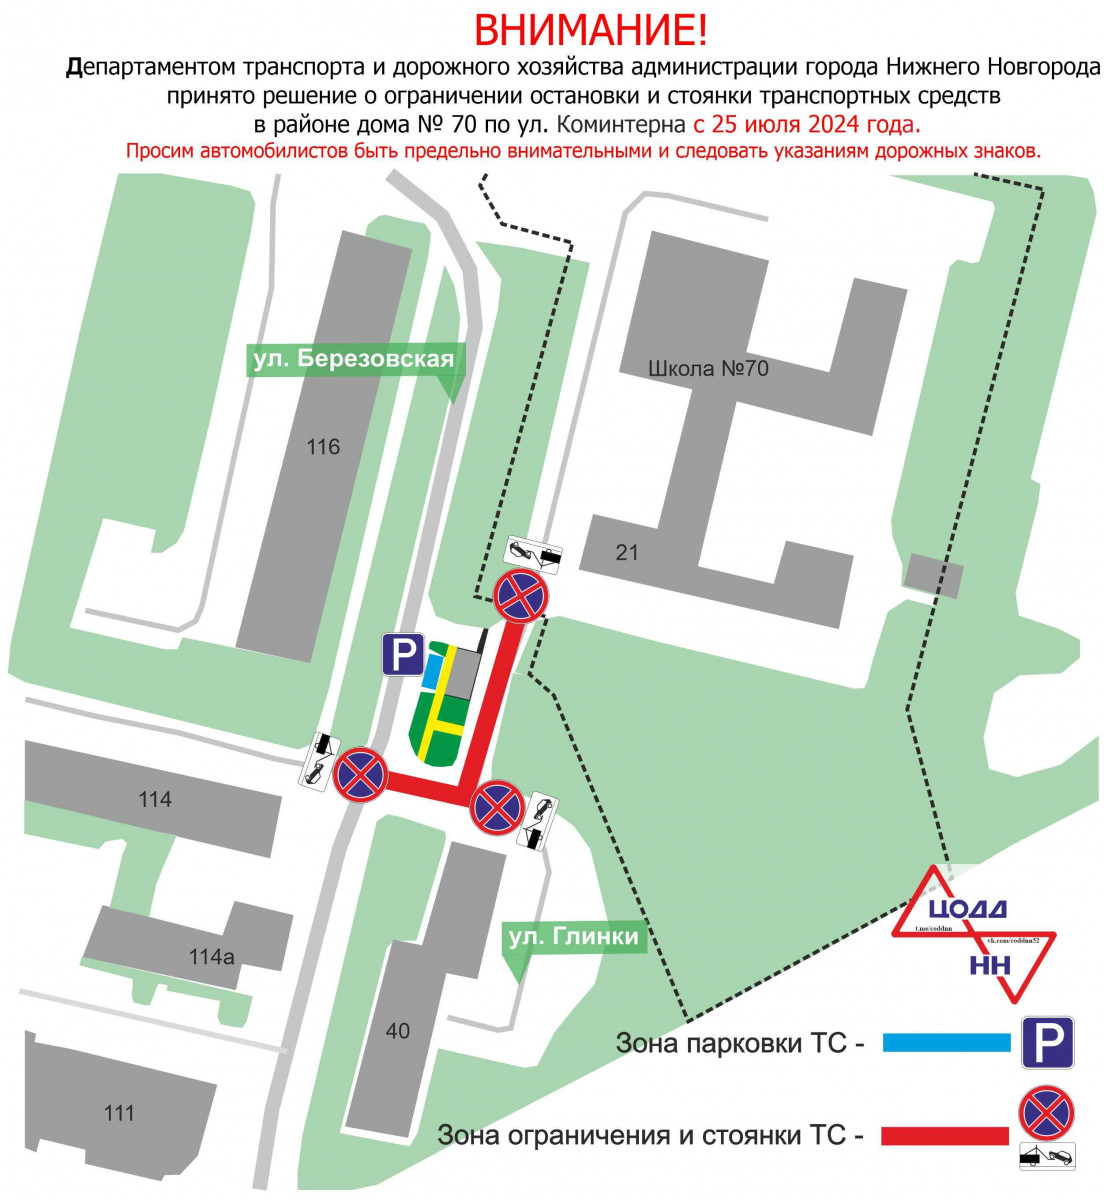 Парковку транспортных средств ограничат в районе здания № 21 по улице Коминтерна с 25 июля